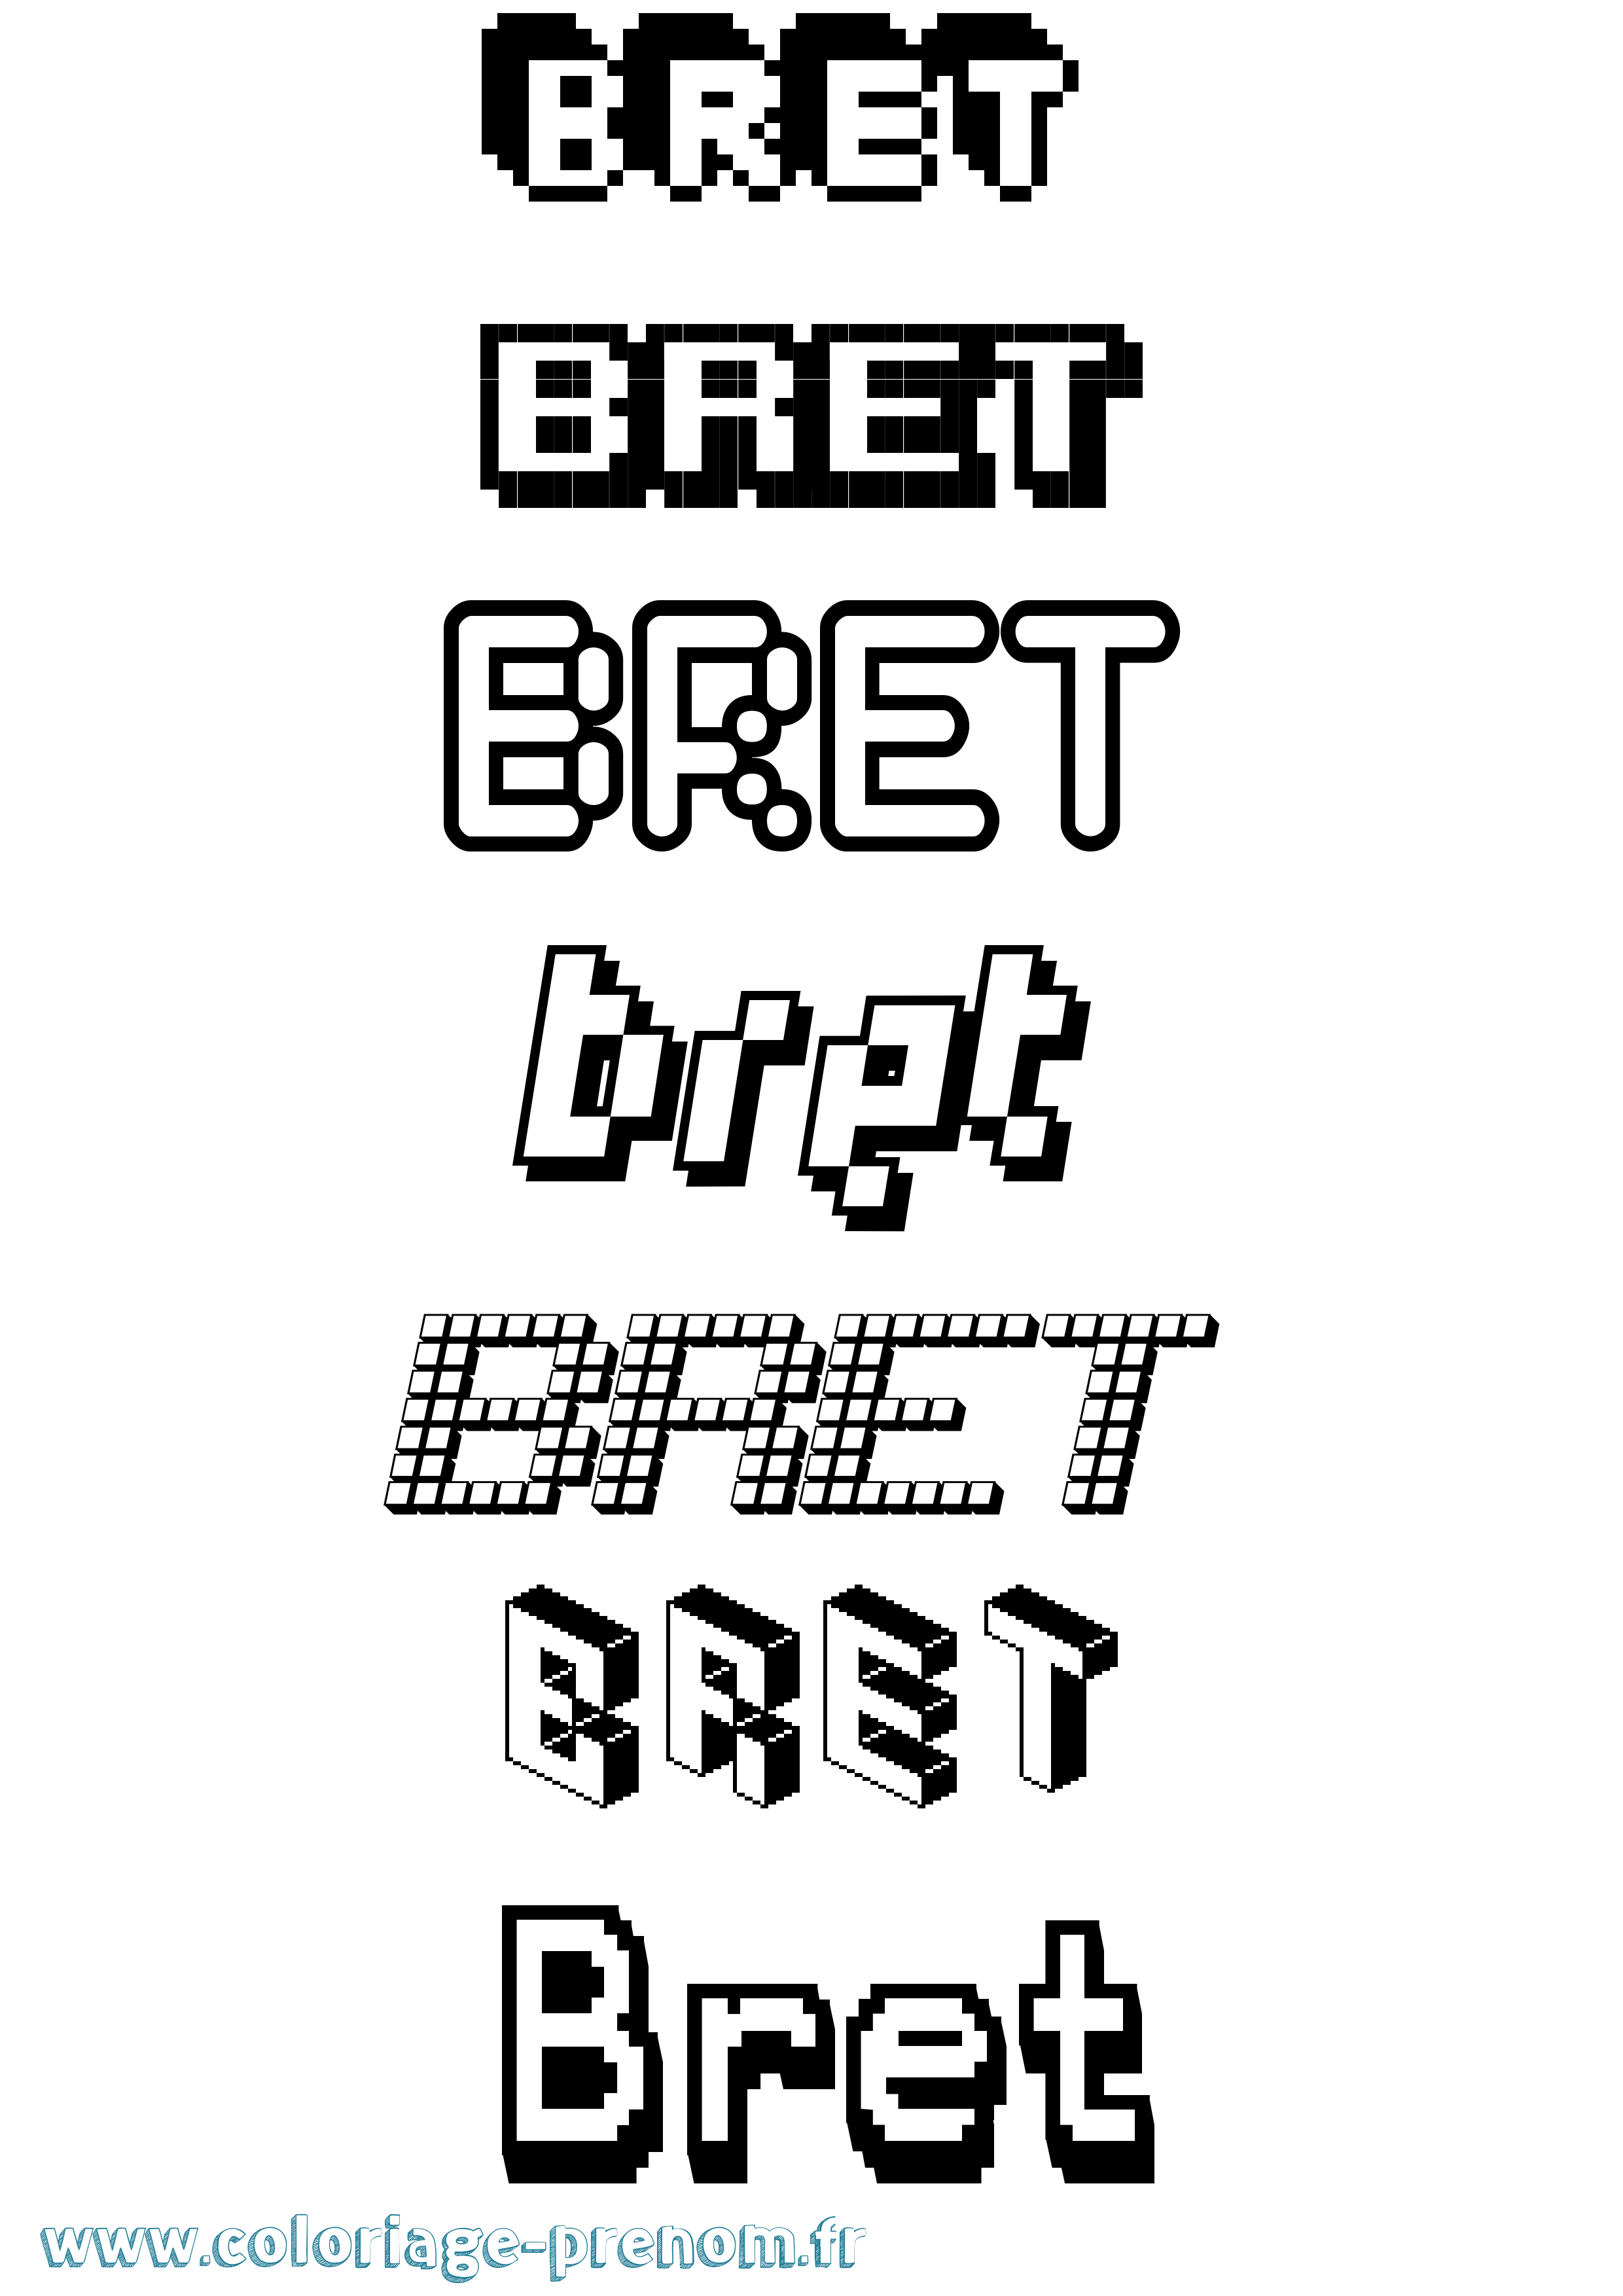 Coloriage prénom Bret Pixel